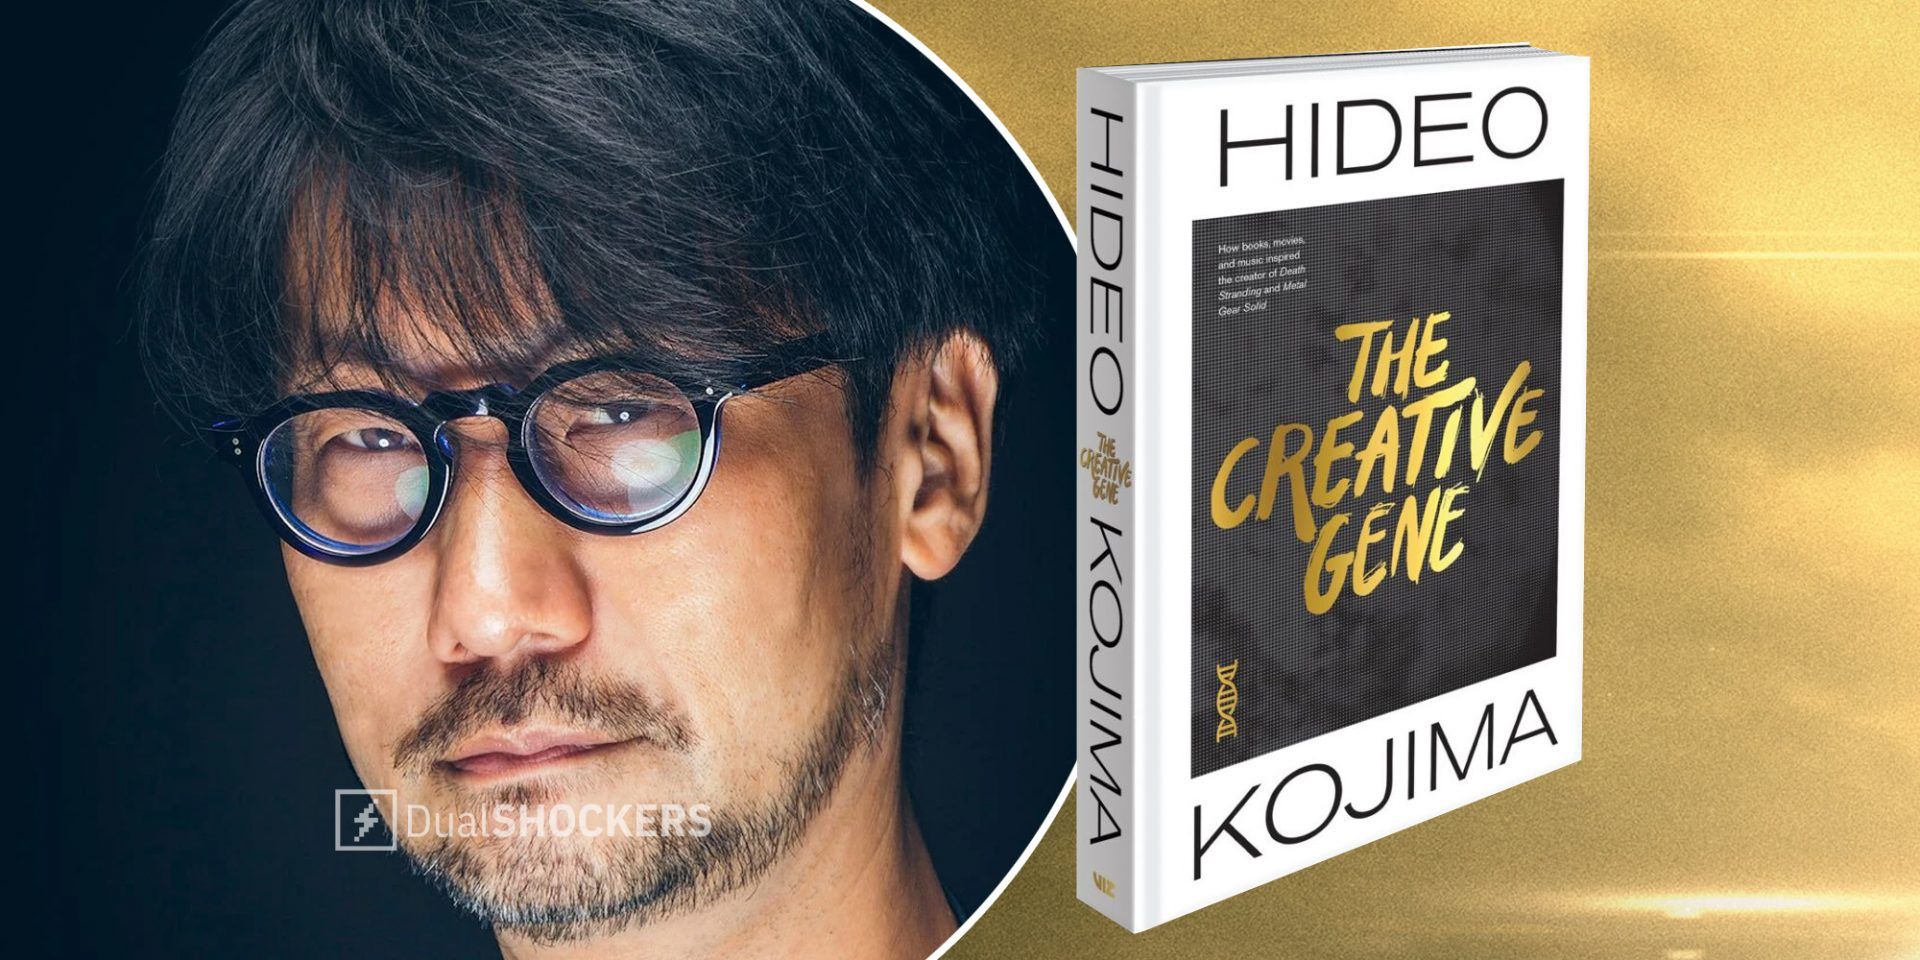 Viz publishing Hideo Kojima book The Creative Gene in English in 2021 -  Polygon